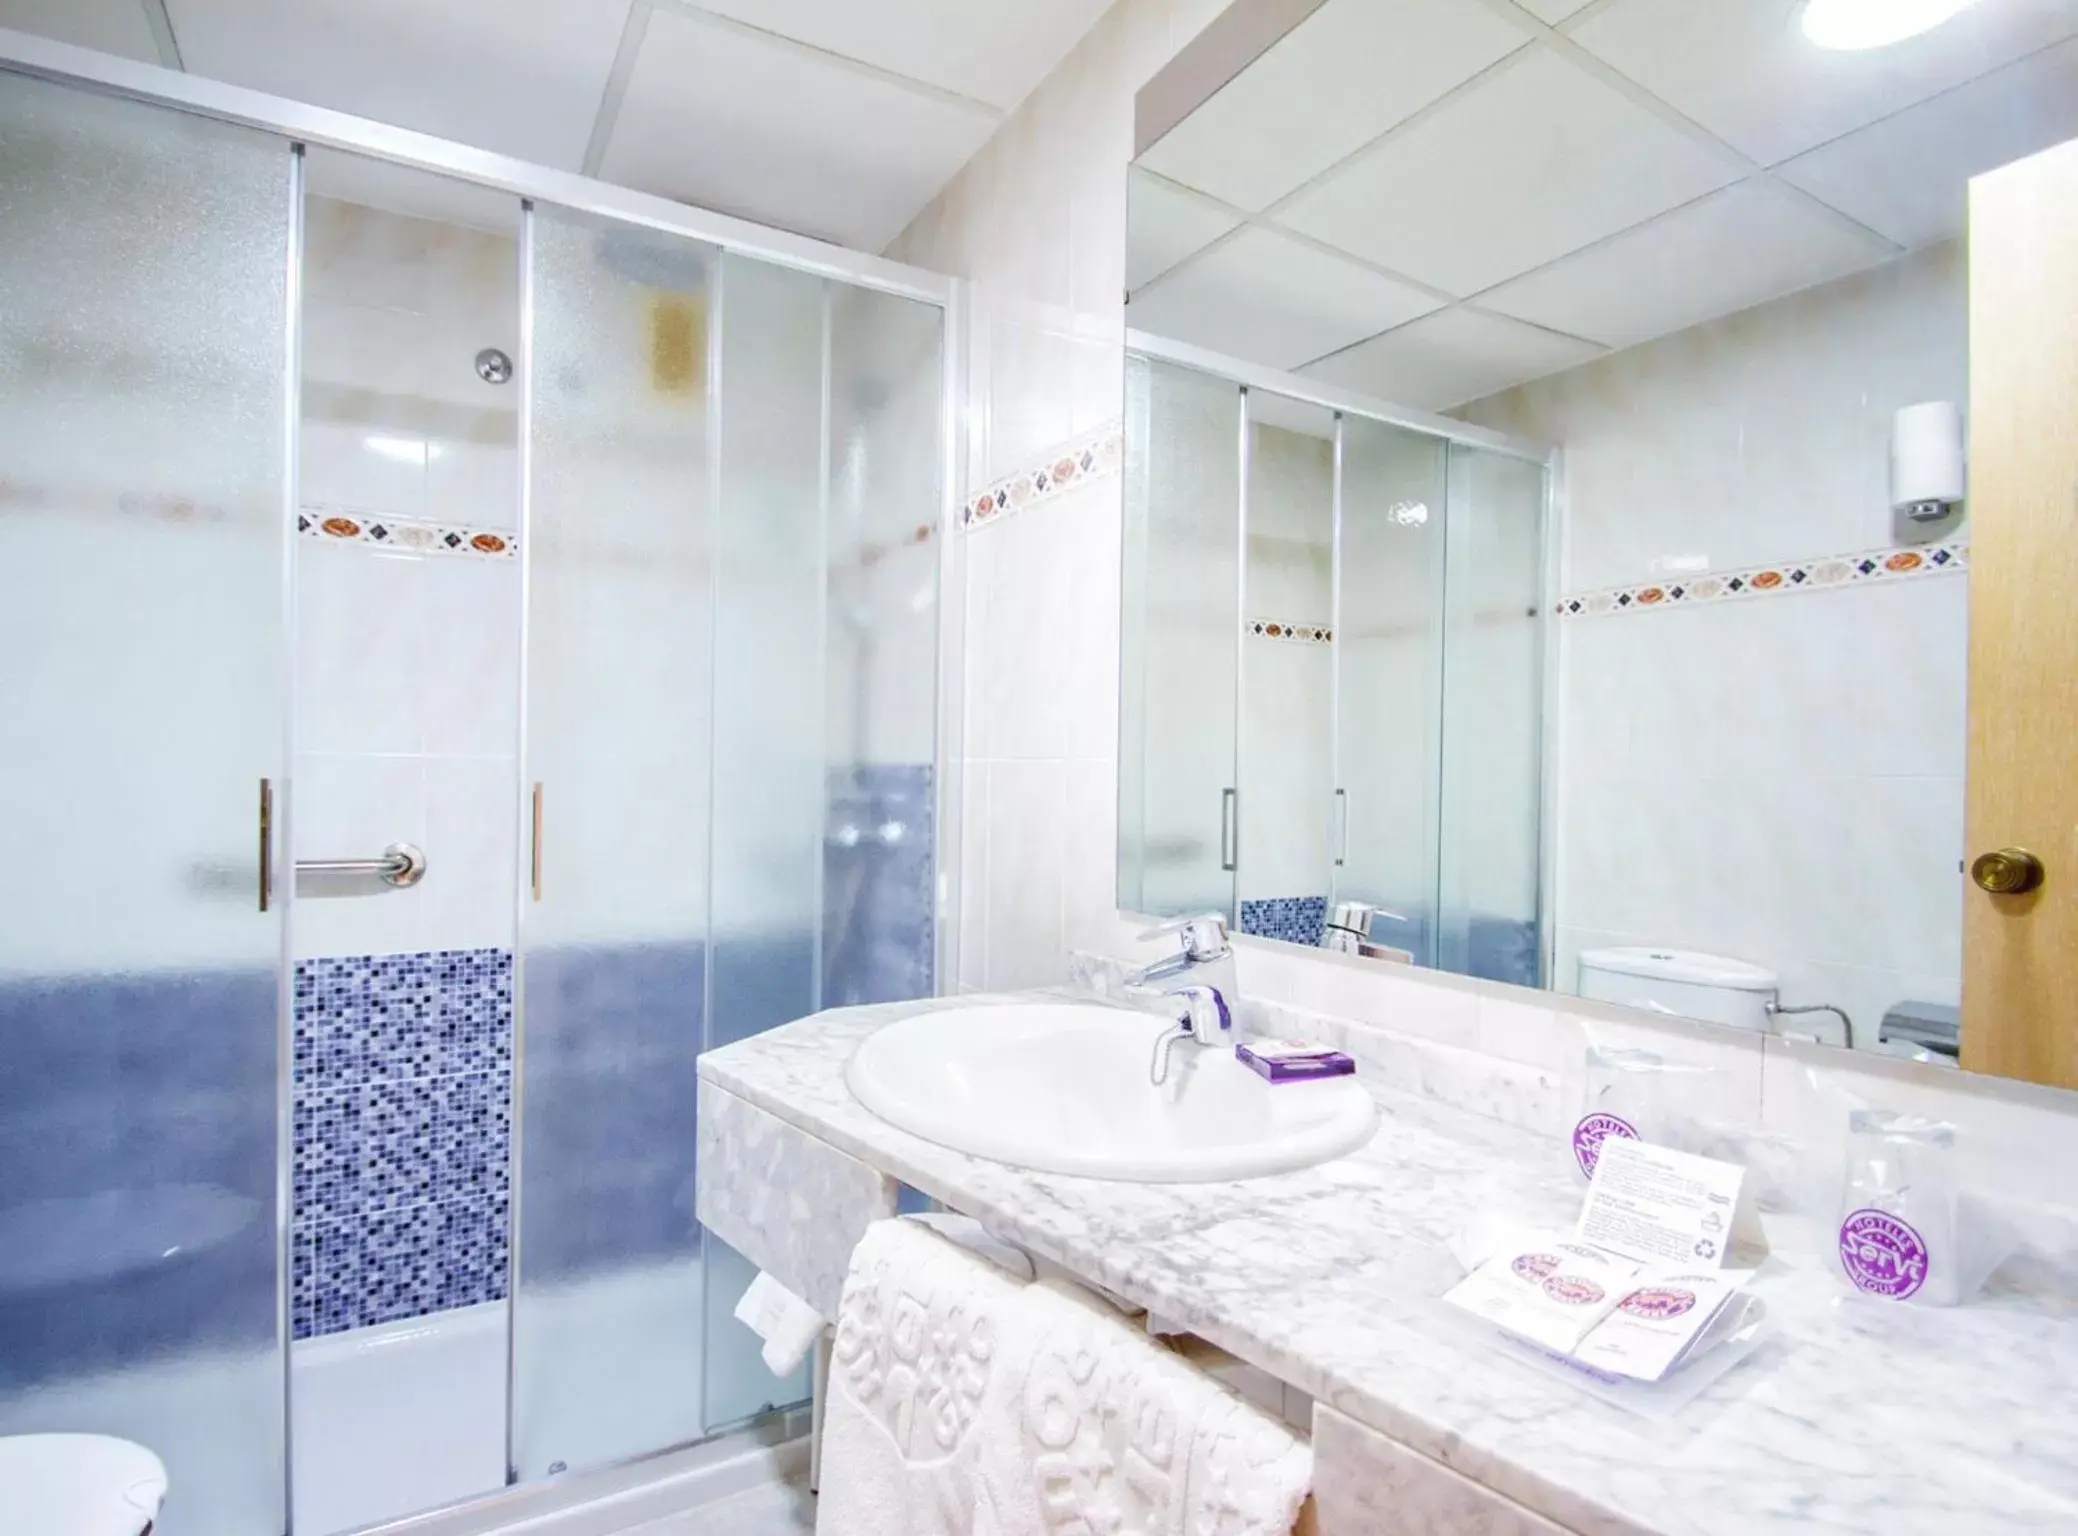 Bathroom in Hotel Servigroup Rialto